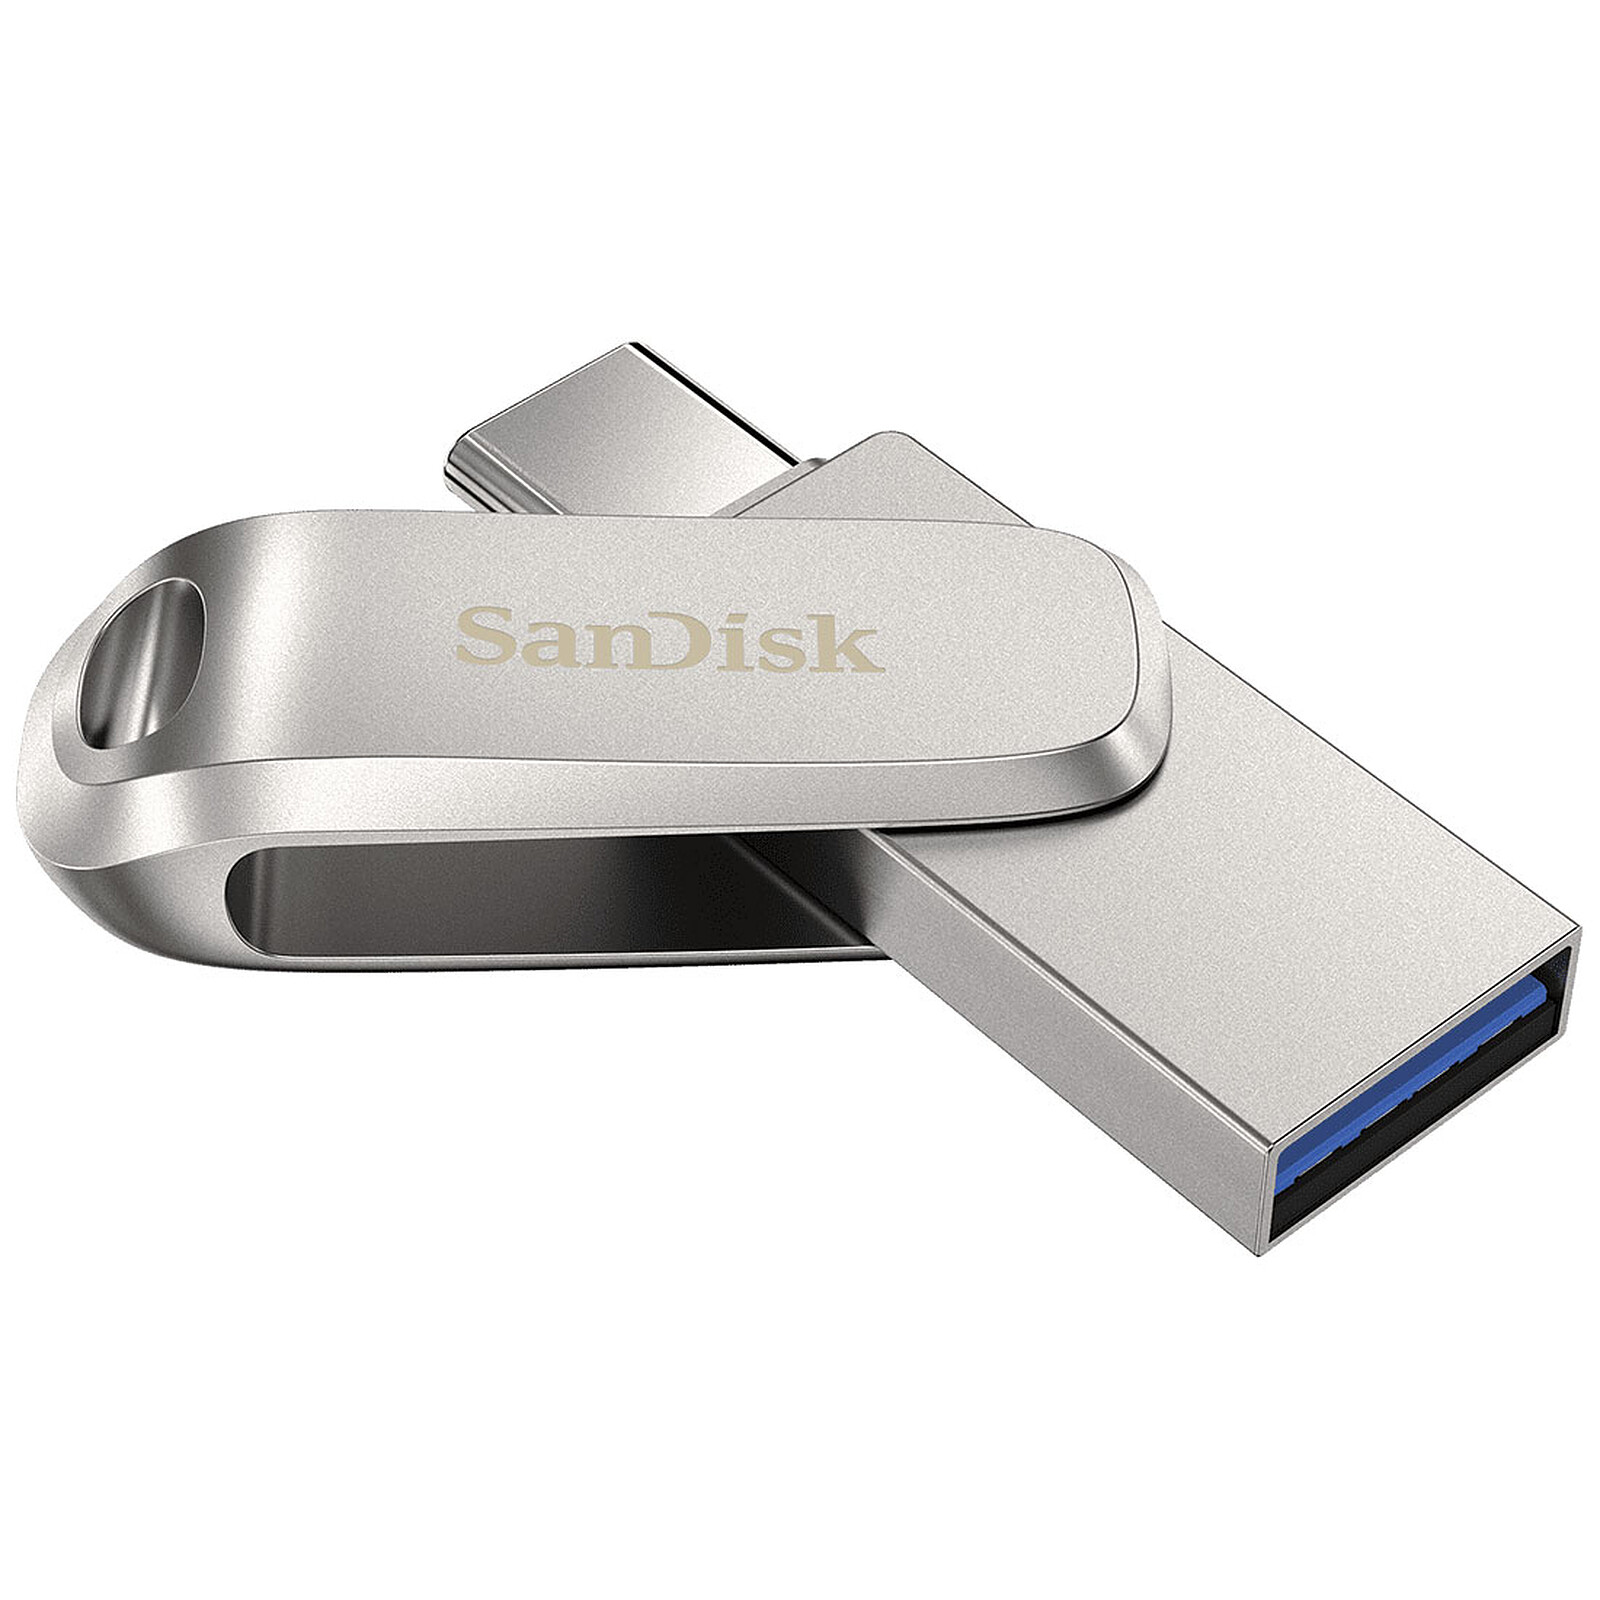 256 Go de stockage à 30€ avec cette clé USB SanDisk Ultra Flair à